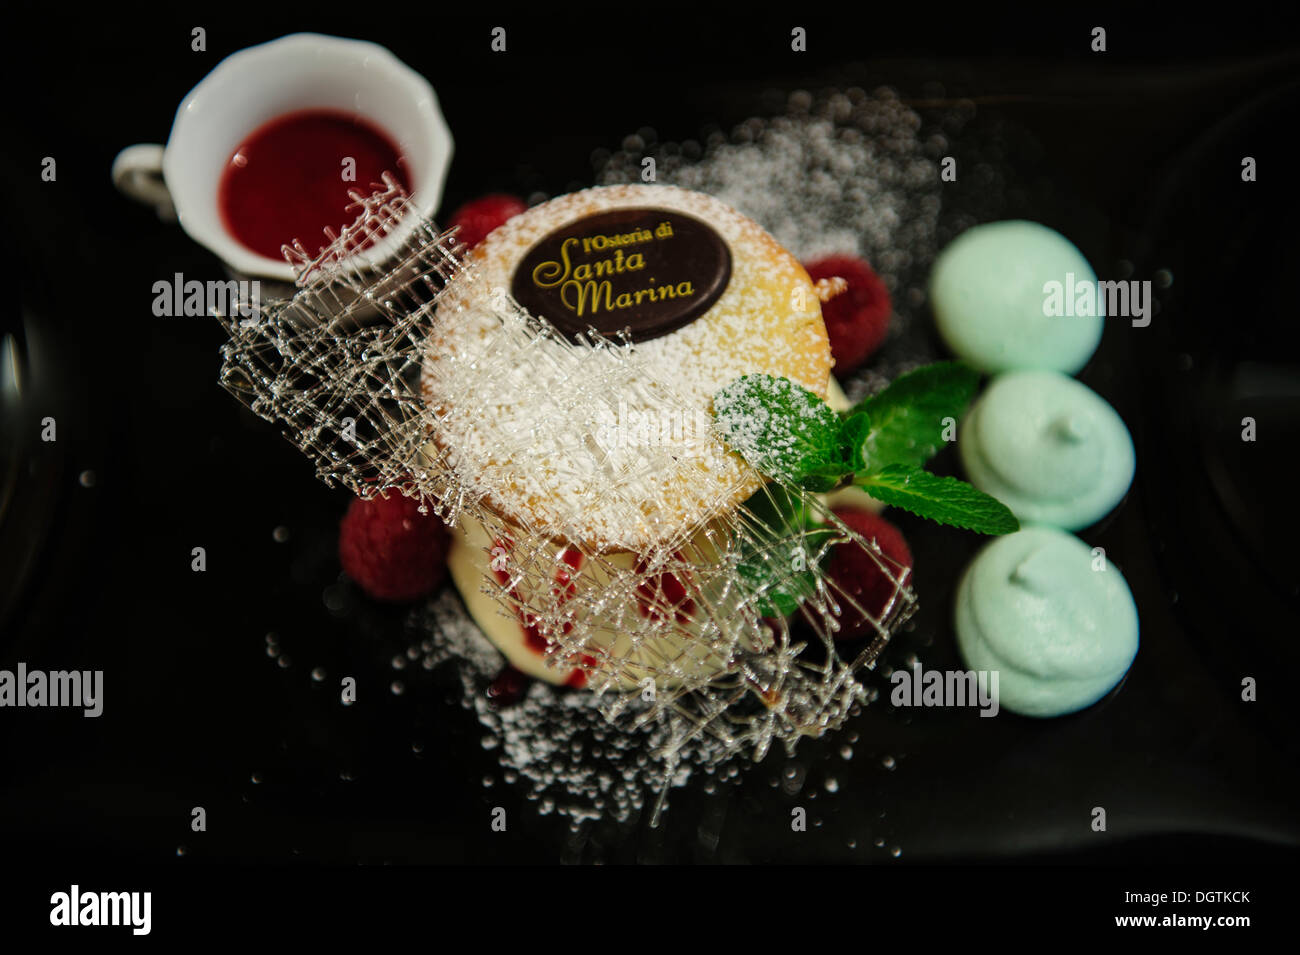 La crème chantilly, mascarpone cake aux framboises , Osteria di Santa Marina, Venise, Italie. Banque D'Images